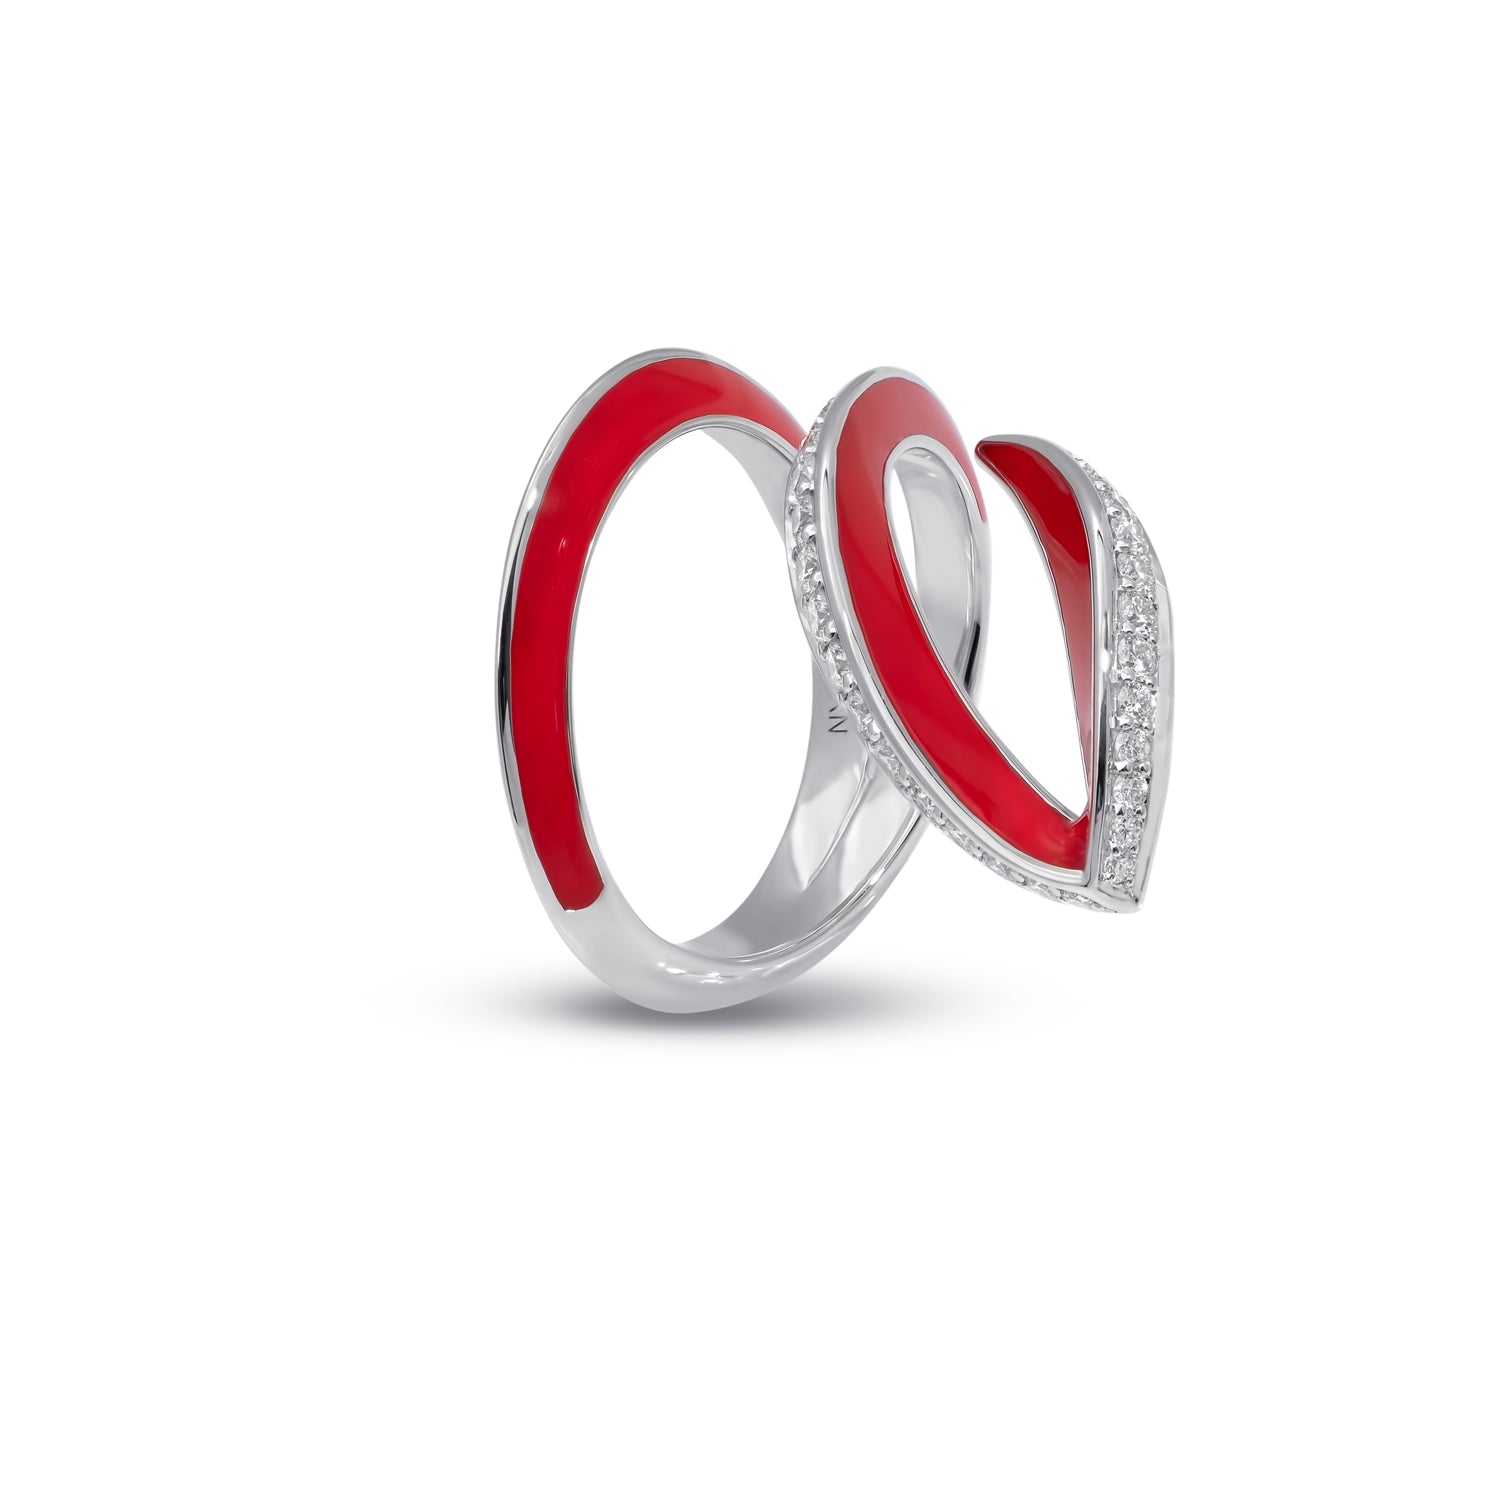 VIVA geschwungener Ring mit Diamant und roter Emaille